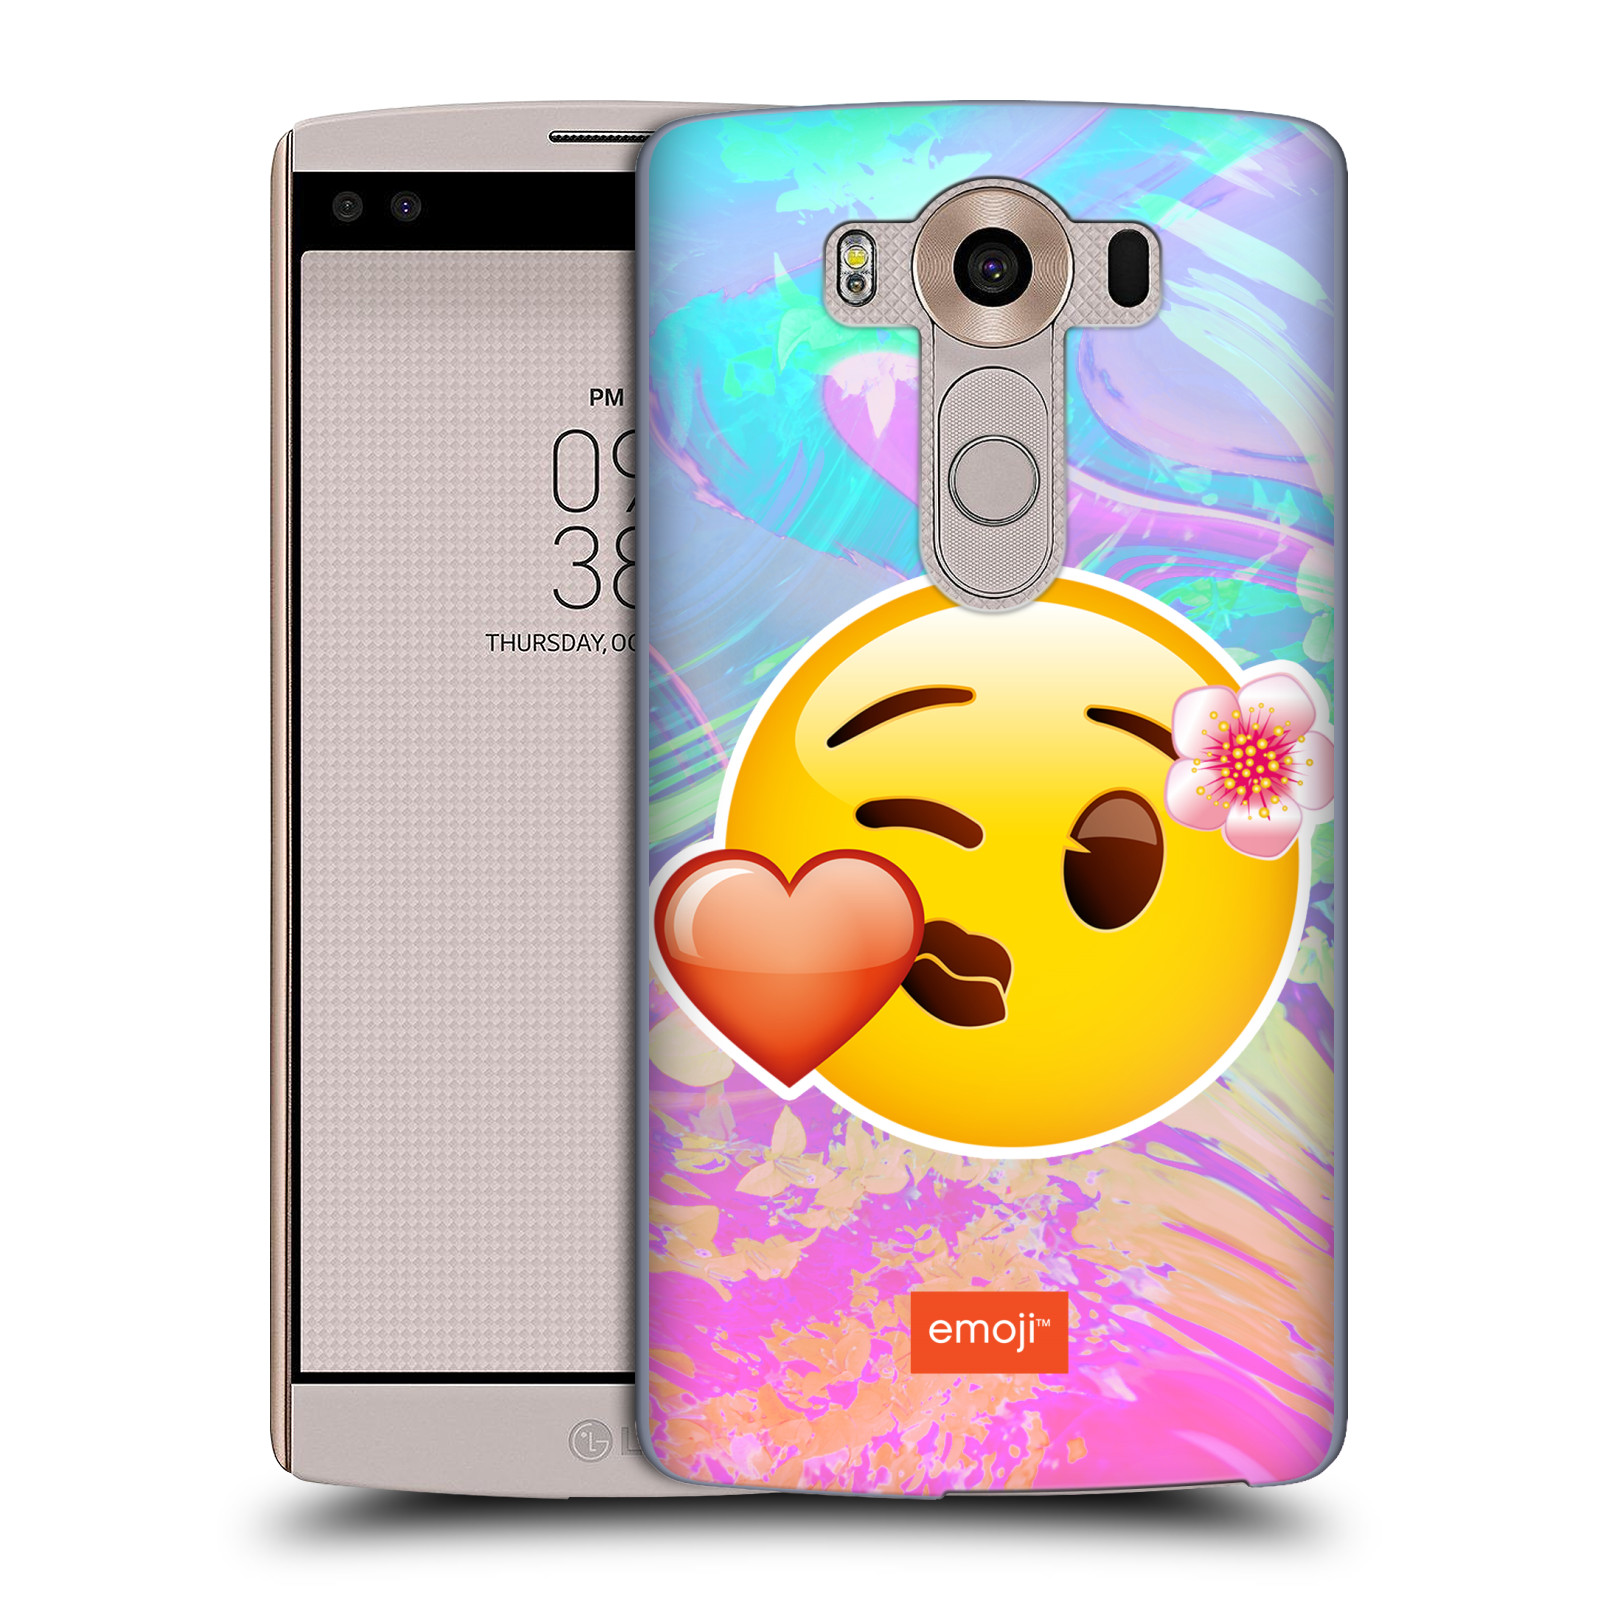 Pouzdro na mobil LG V10 - HEAD CASE - Emoji smajlík pusinka